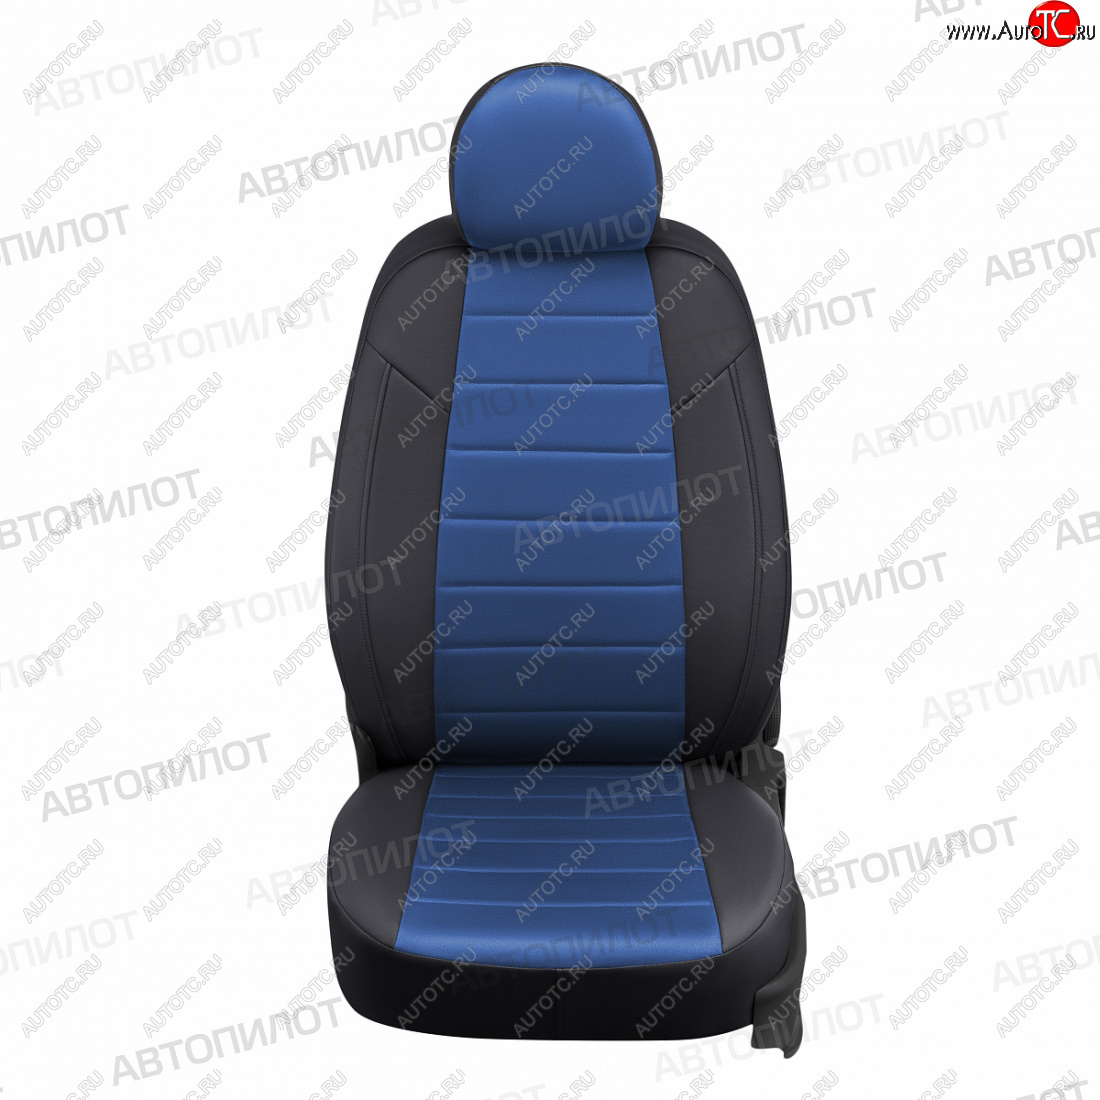 13 849 р. Чехлы сидений (5 мест, экокожа/алькантара) Автопилот  Ford Galaxy  2 (2006-2015) (черный/синий)